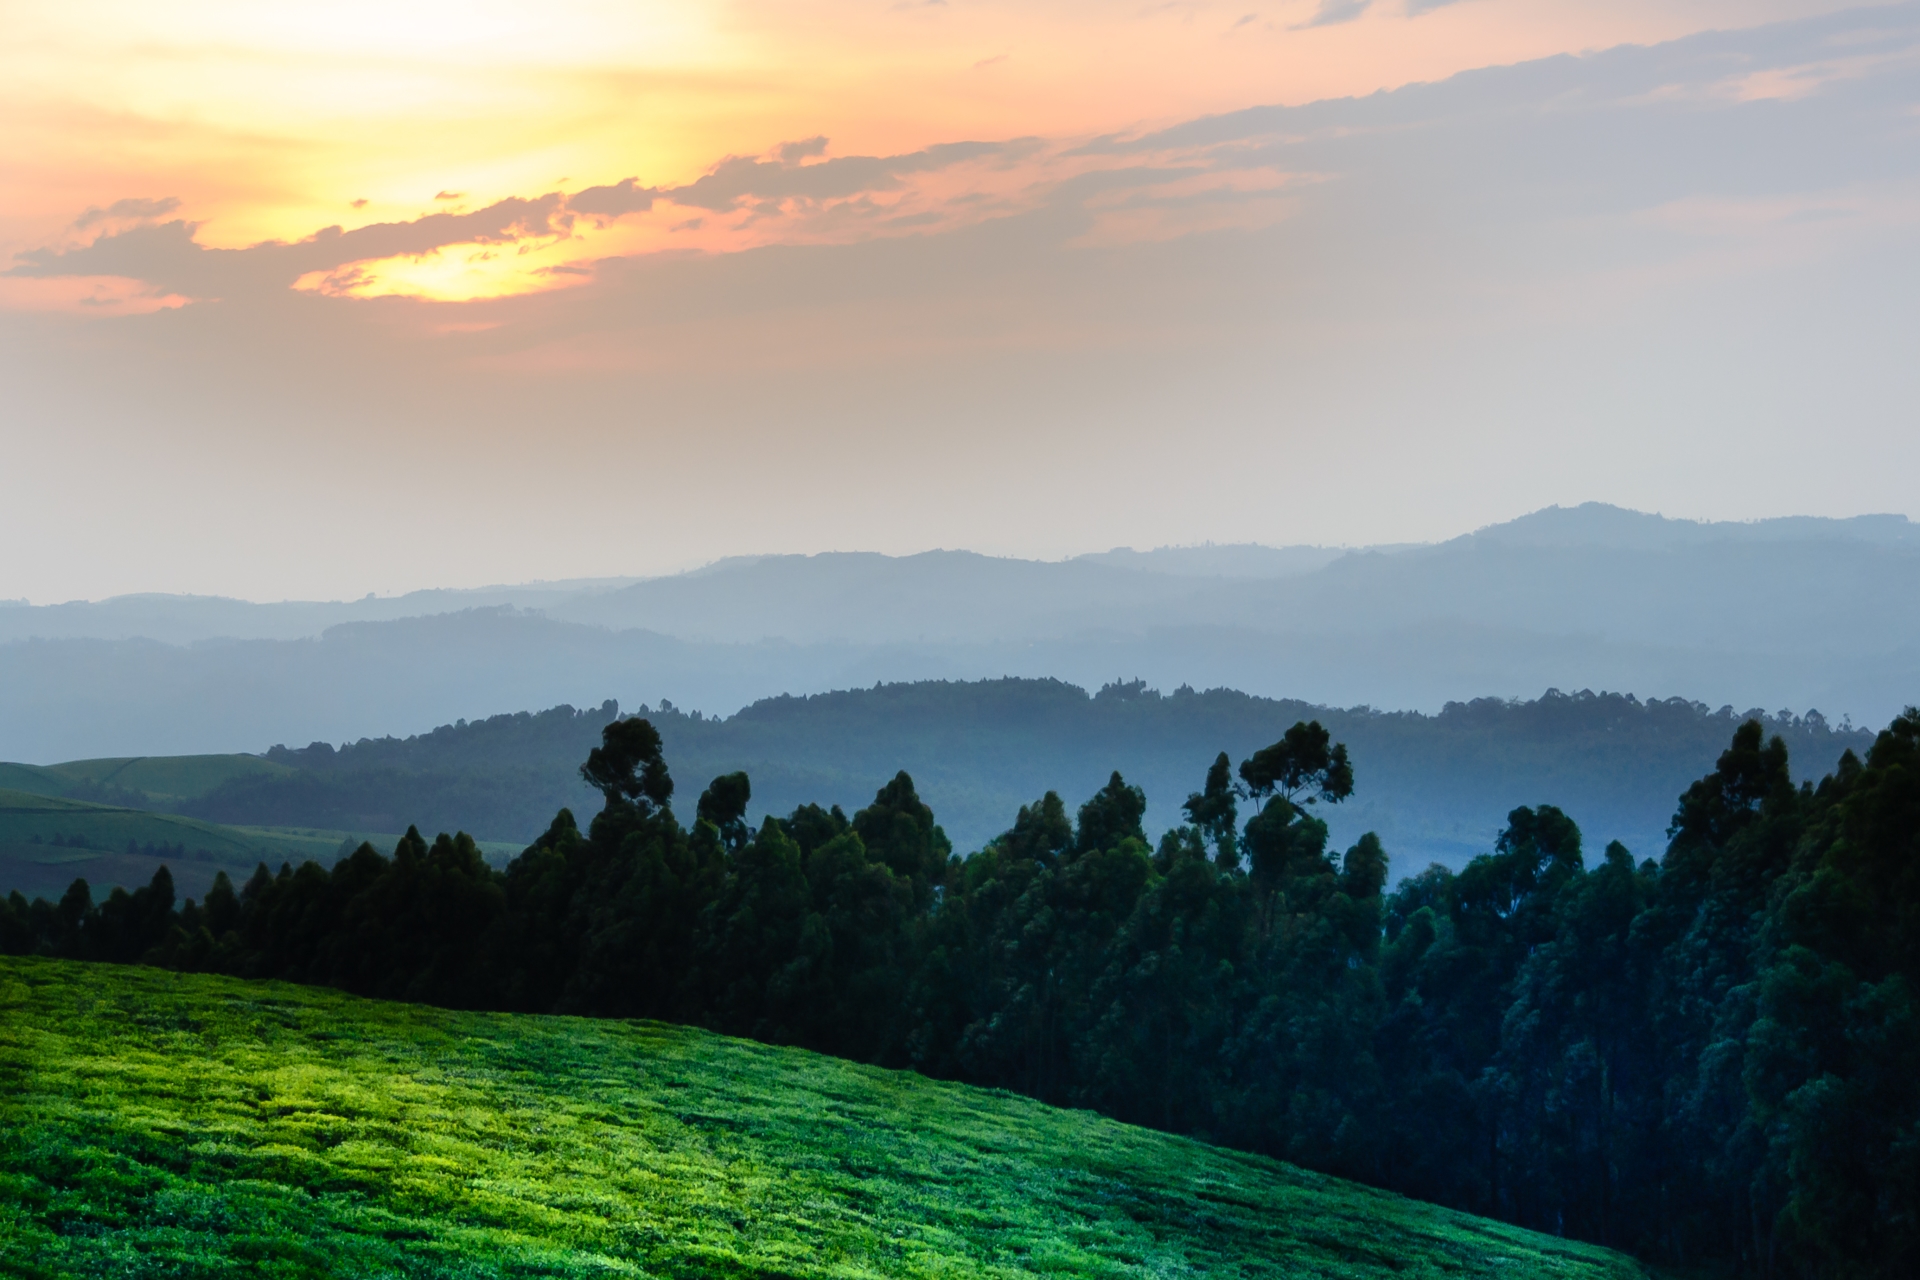 Nyungwe Forest - Highlights of Rwanda